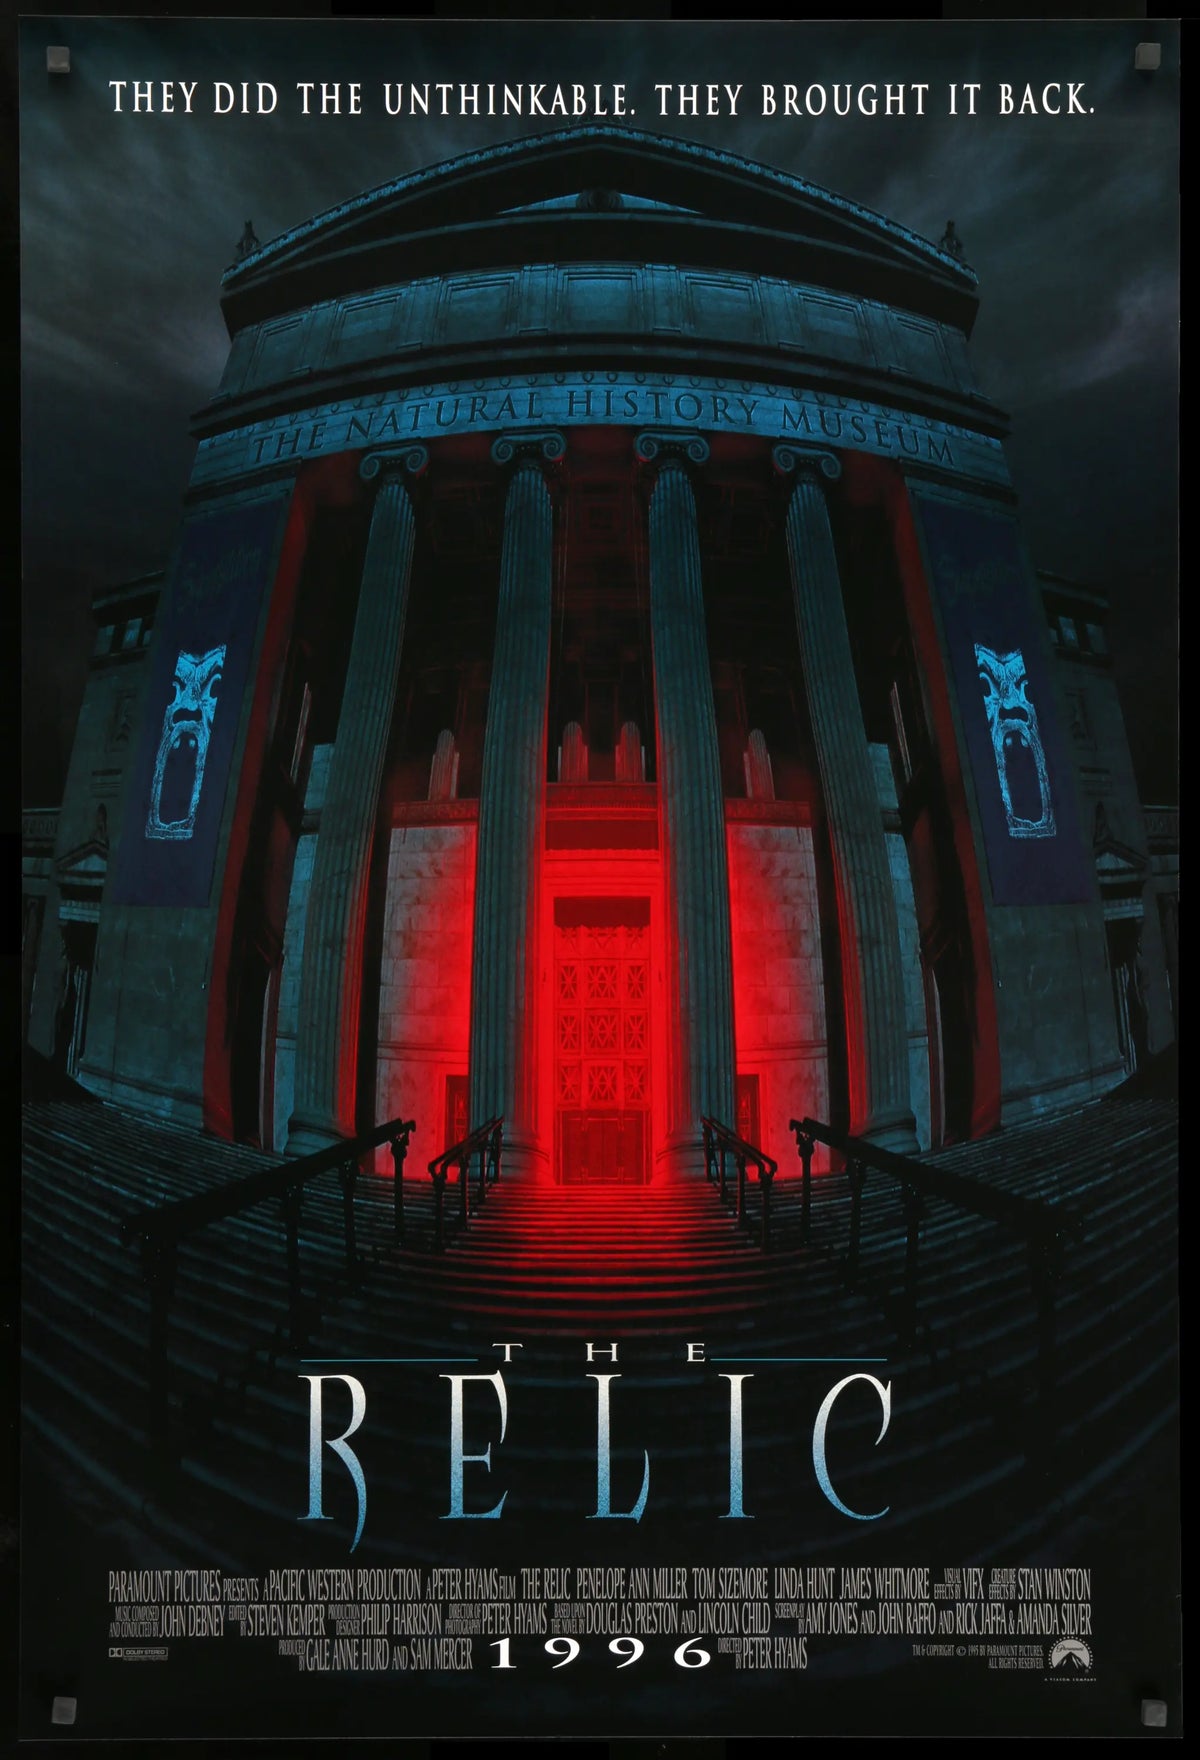 Relic (1997) original movie poster for sale at Original Film Art